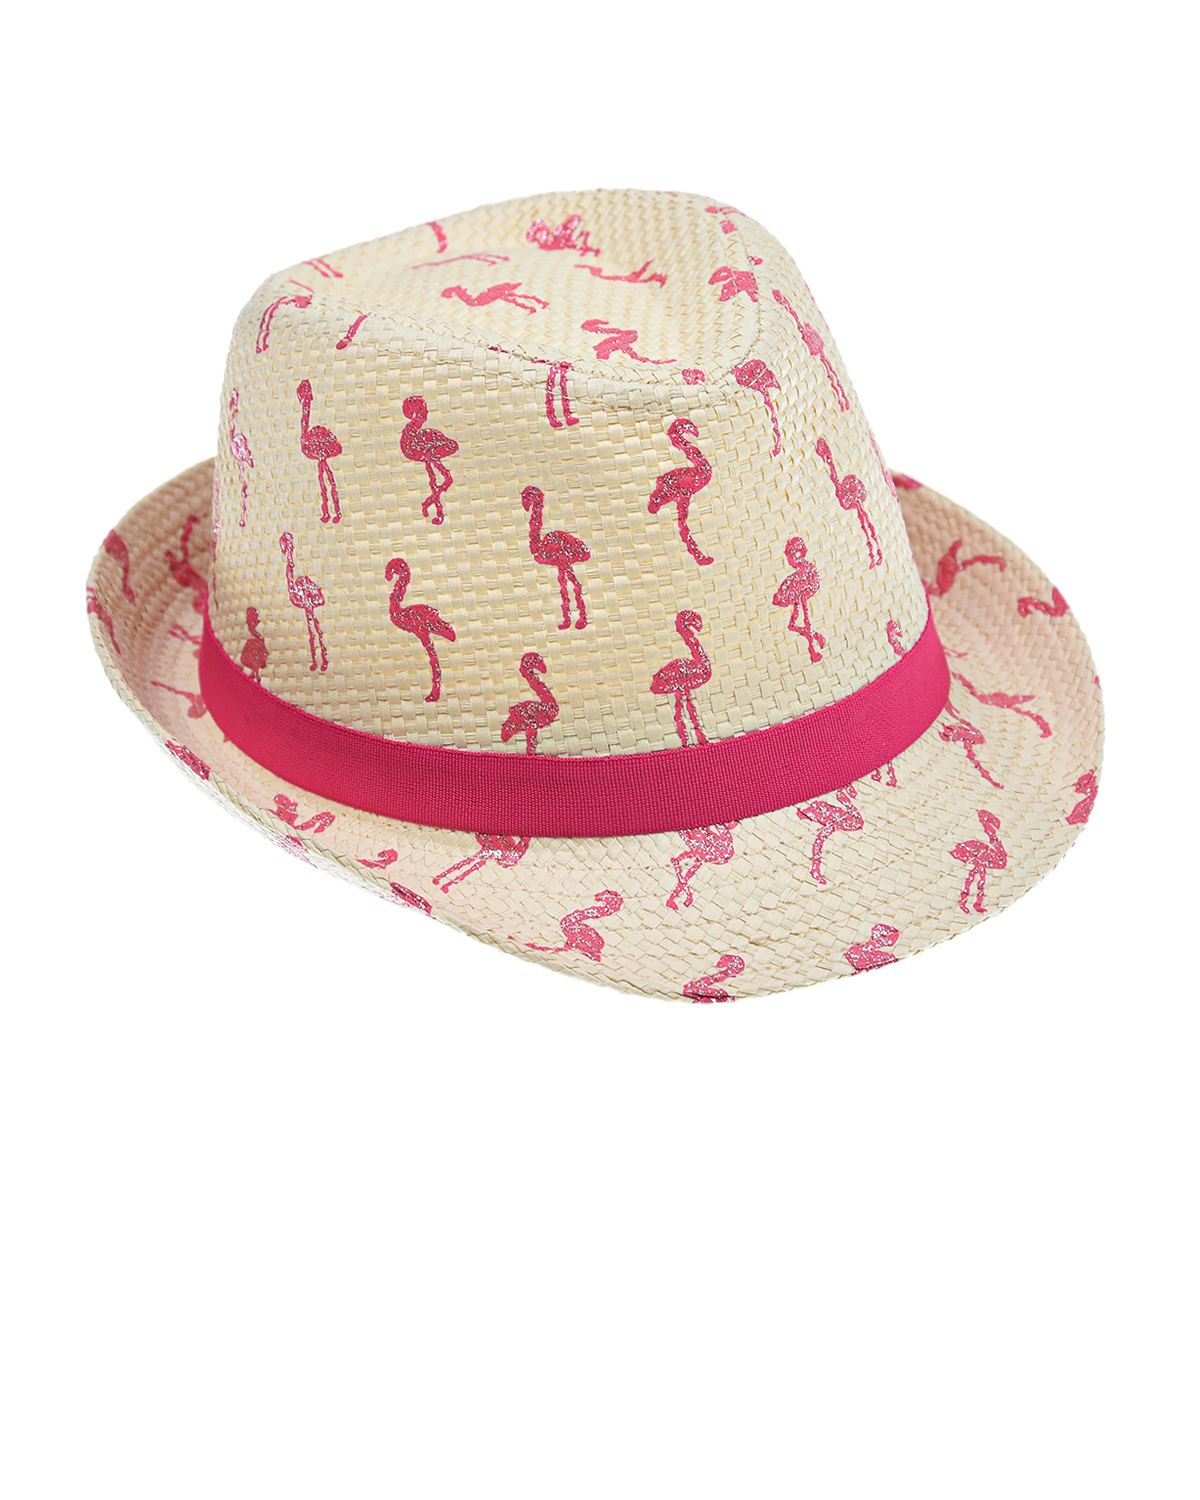 Плетеная шляпа с принтом "Фламинго" MaxiMo детская, размер 51, цвет бежевый